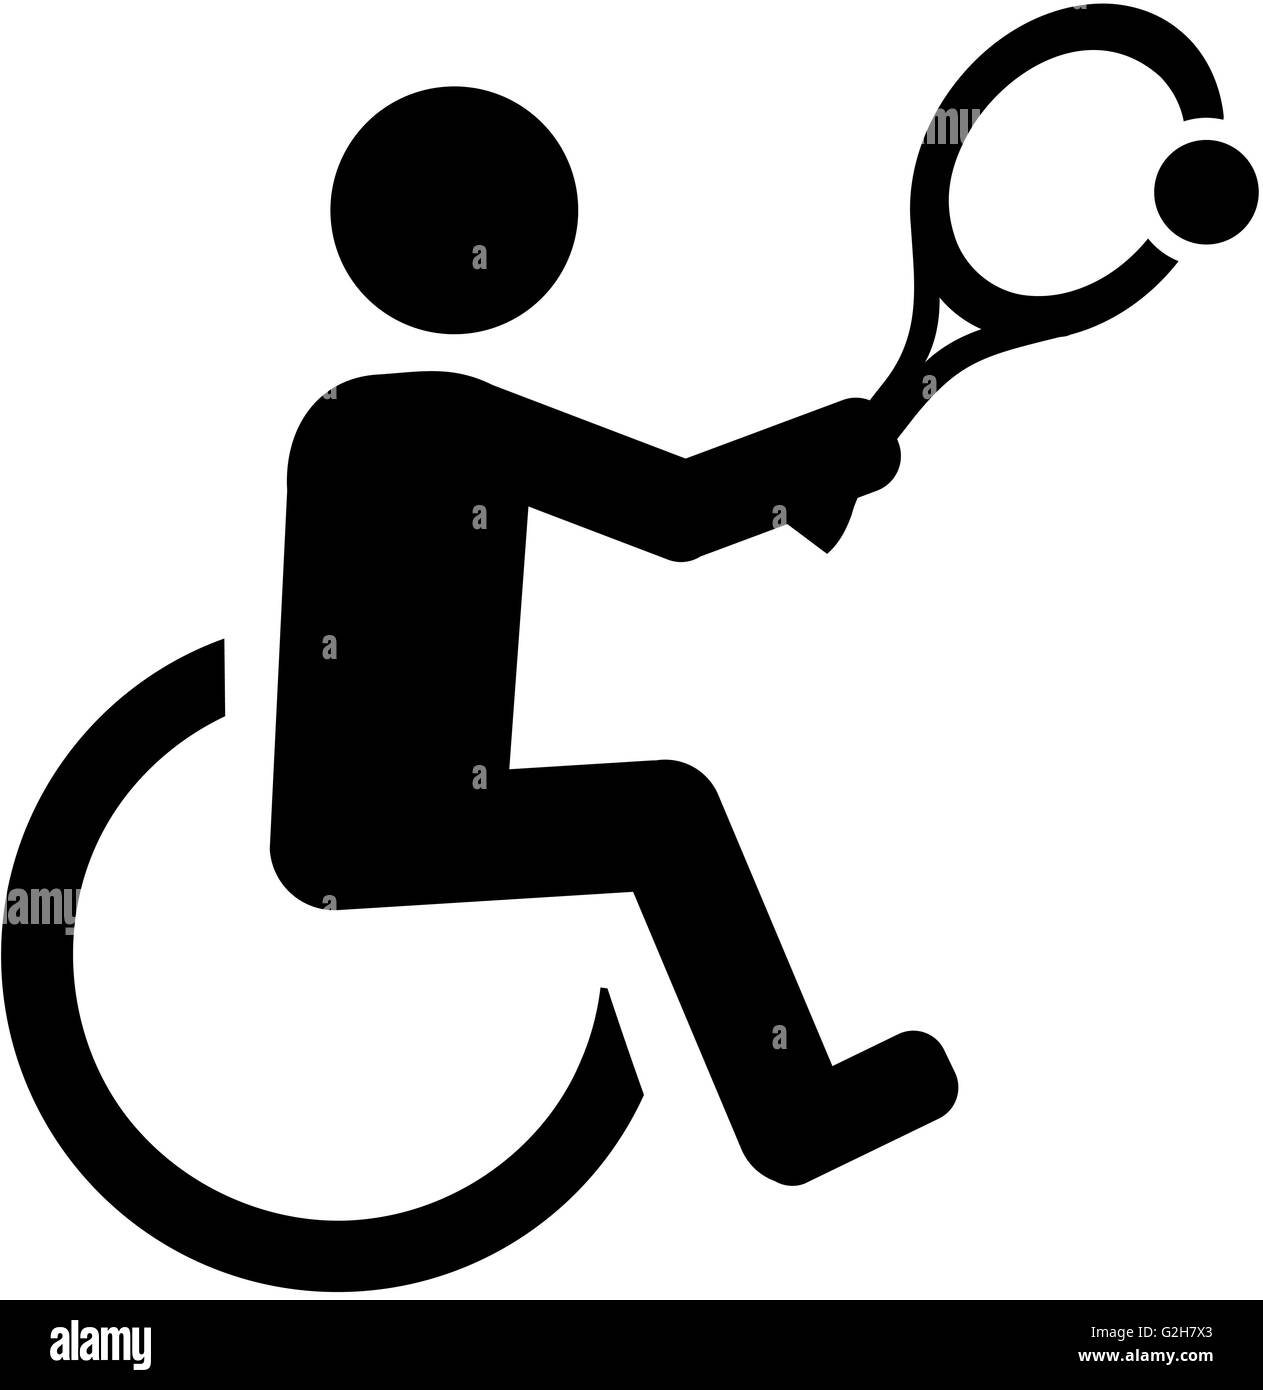 Pictogramme de Tennis en fauteuil roulant Banque D'Images